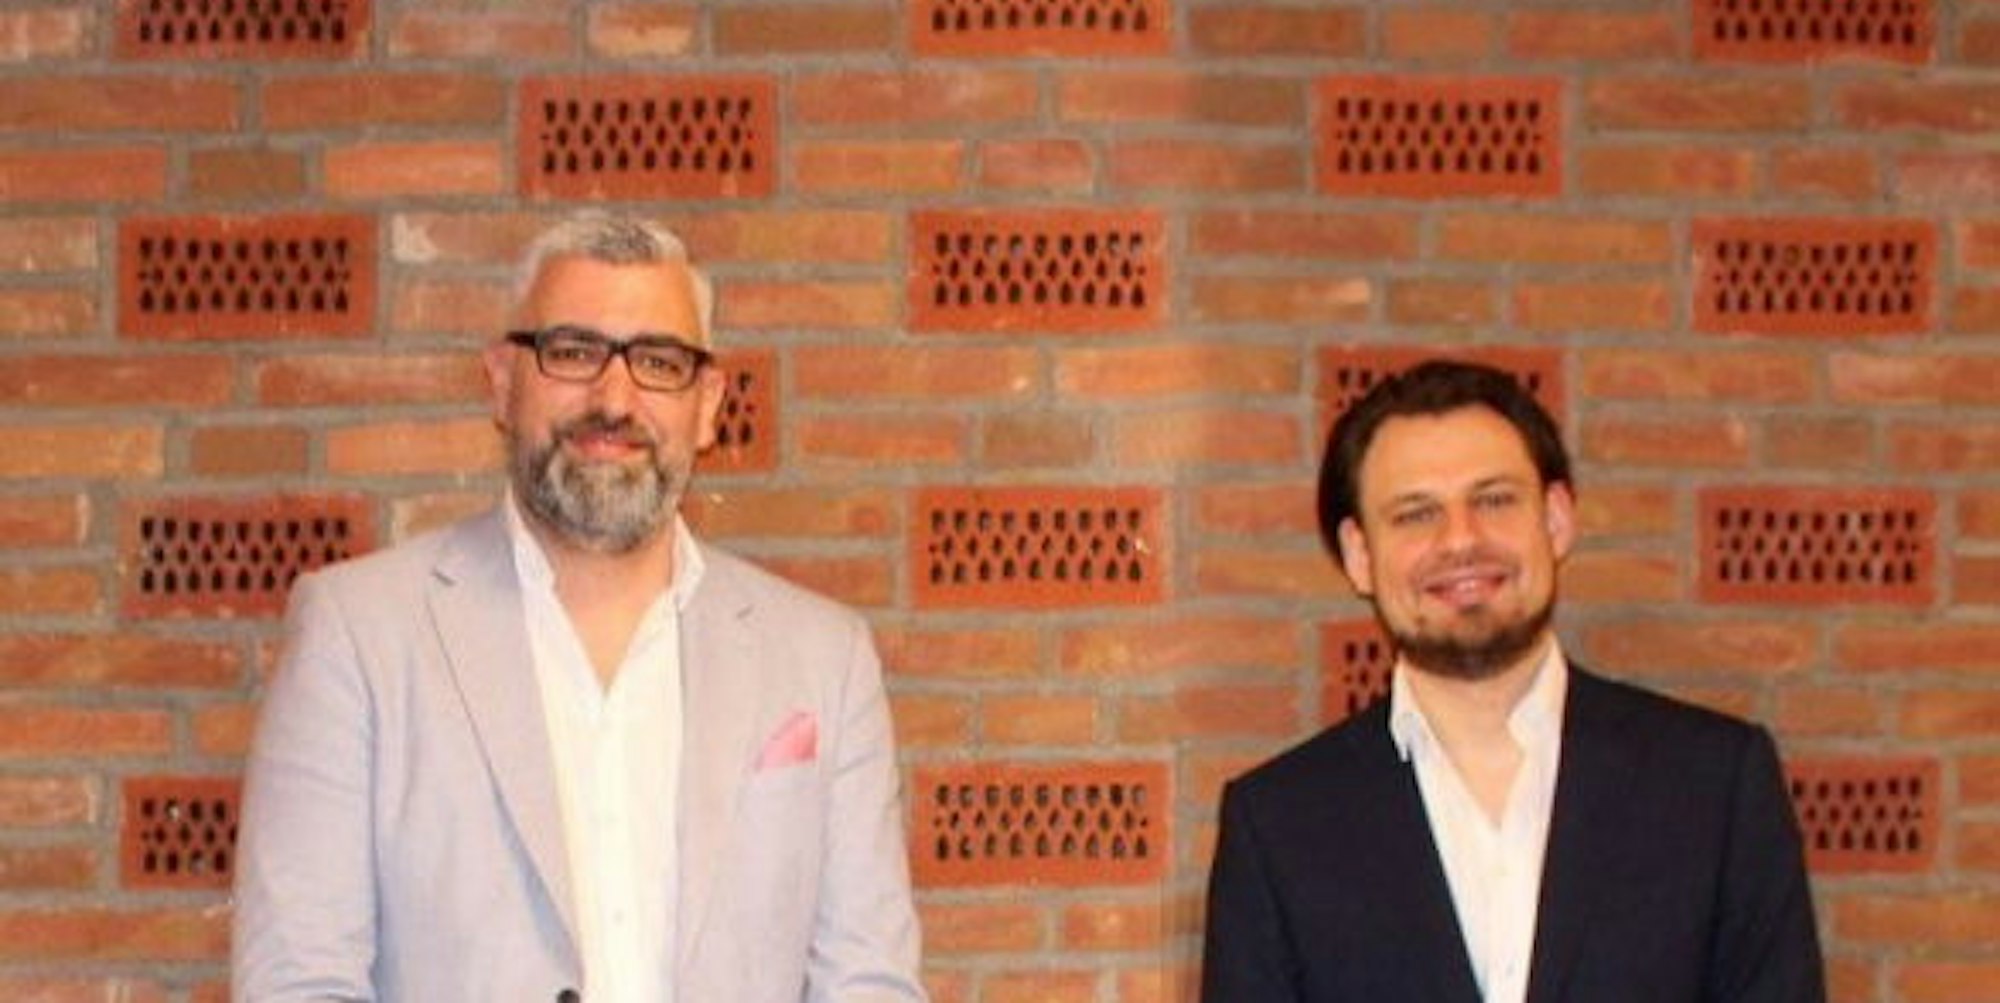 Die Kandidaten: Marco Frommenkord (l.) und Alexander Engel (r.)